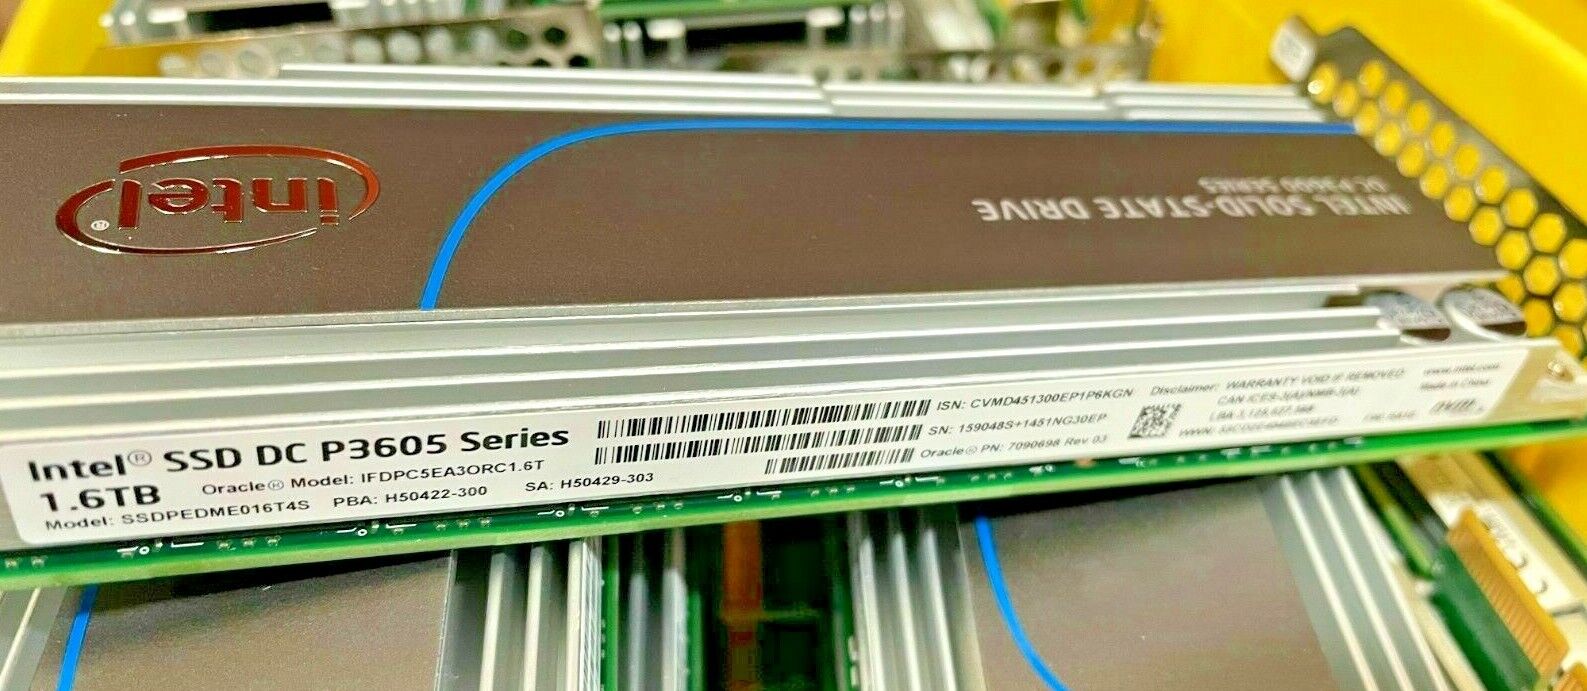 98+% LIFE Intel SSD DC P3600 / P3605 Series PCIe 1.6TB SSDPEDME016T4S 7307468